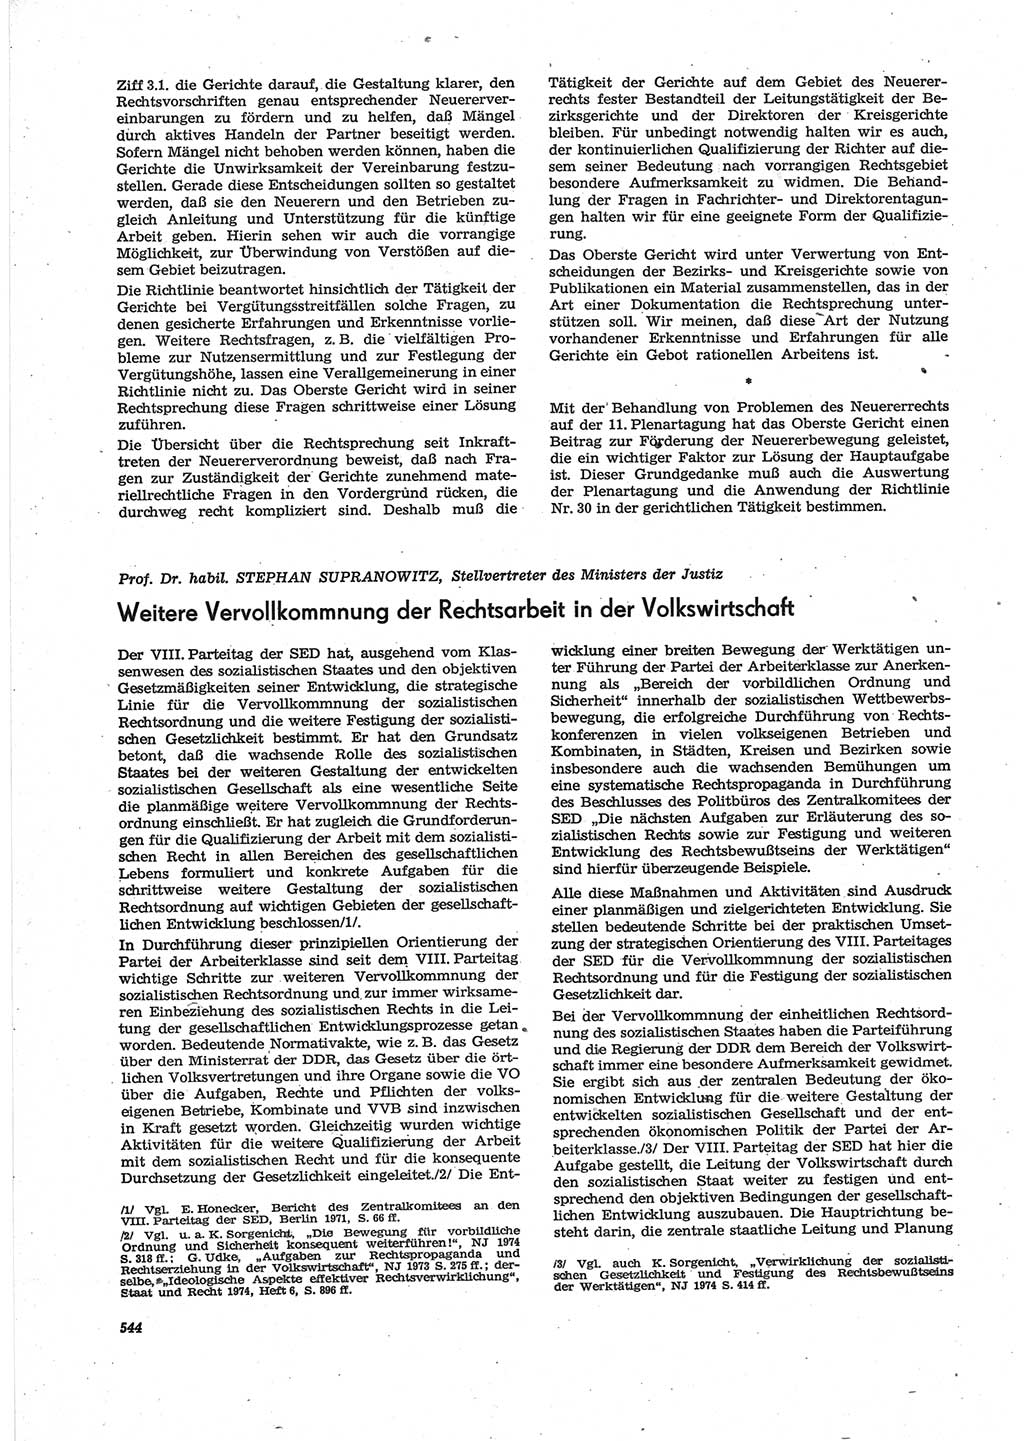 Neue Justiz (NJ), Zeitschrift für Recht und Rechtswissenschaft [Deutsche Demokratische Republik (DDR)], 28. Jahrgang 1974, Seite 544 (NJ DDR 1974, S. 544)